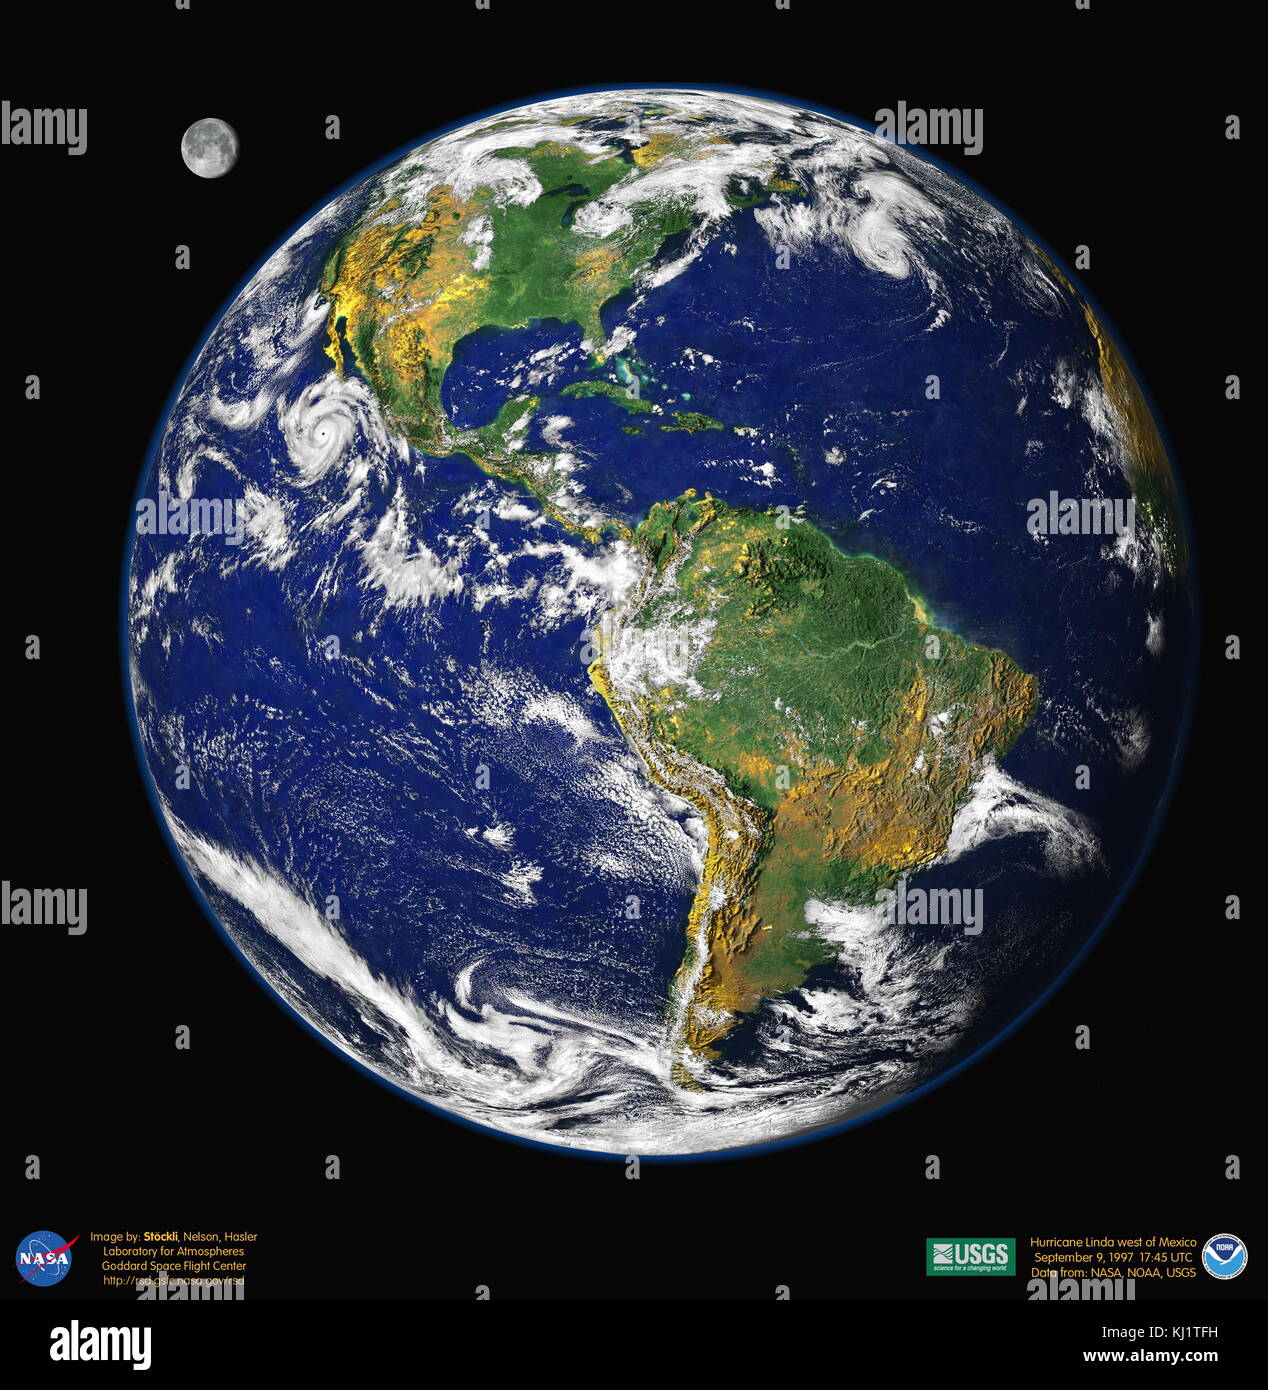 Ein zusammengesetztes Bild der westlichen Hemisphäre der Erde Quelle: Bild erstellt von Reto Stockli mit Hilfe von Alan Nelson, unter der Führung von Fritz Hasler 1997 Stockfoto